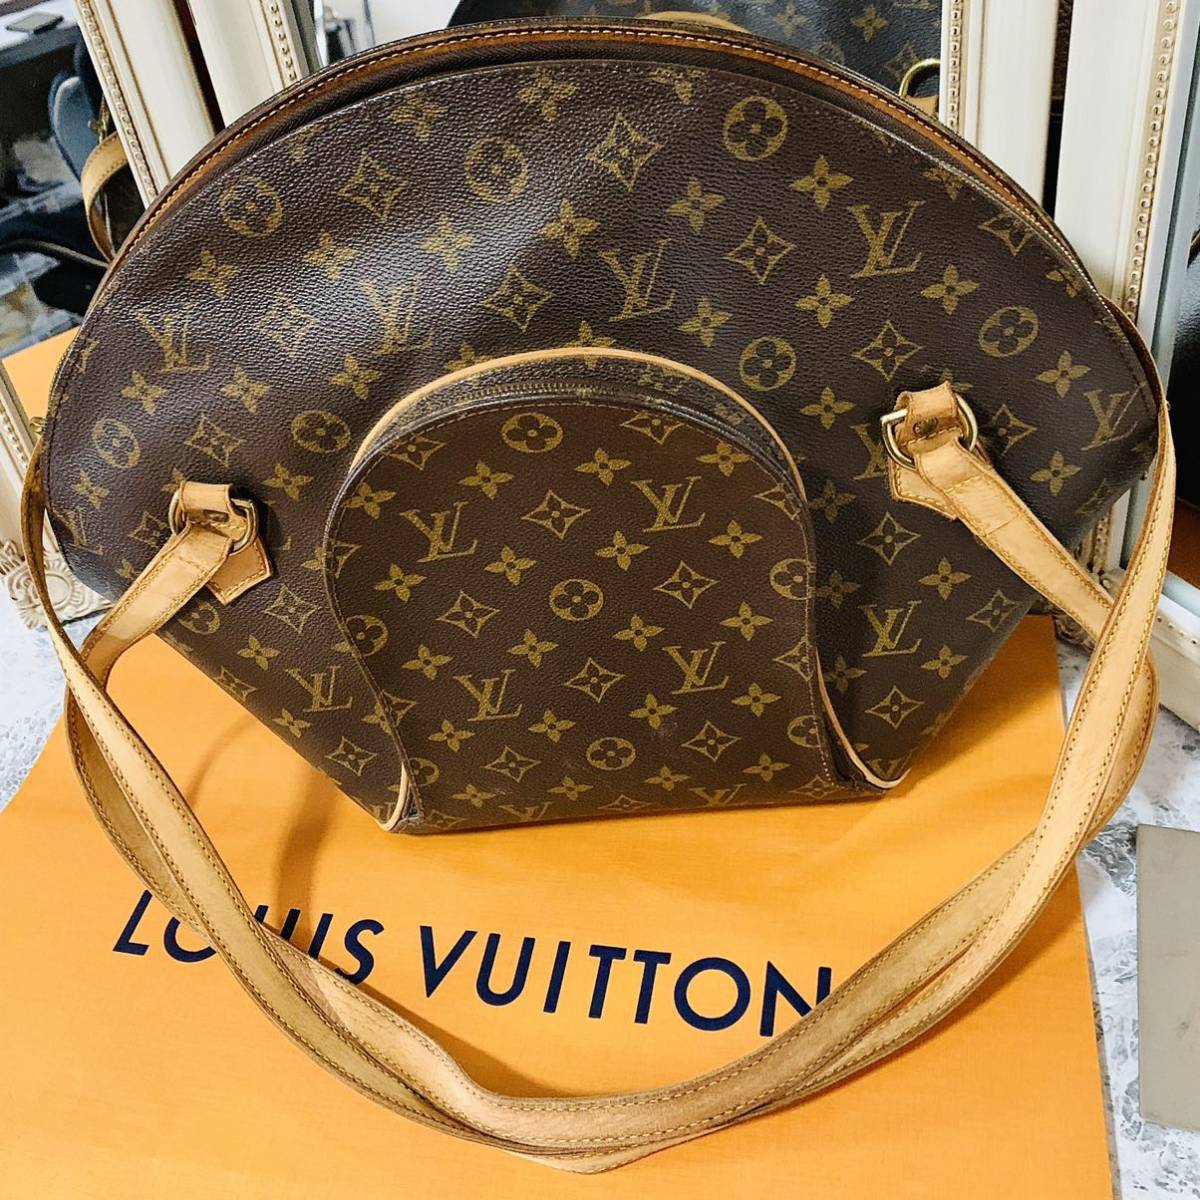 美品 正規品 ルイ・ヴィトン Louis Vuitton エリプス ショッピング 肩掛け トートバッグ ショルダーバッグ モノグラム ブラウン M51128 の画像1